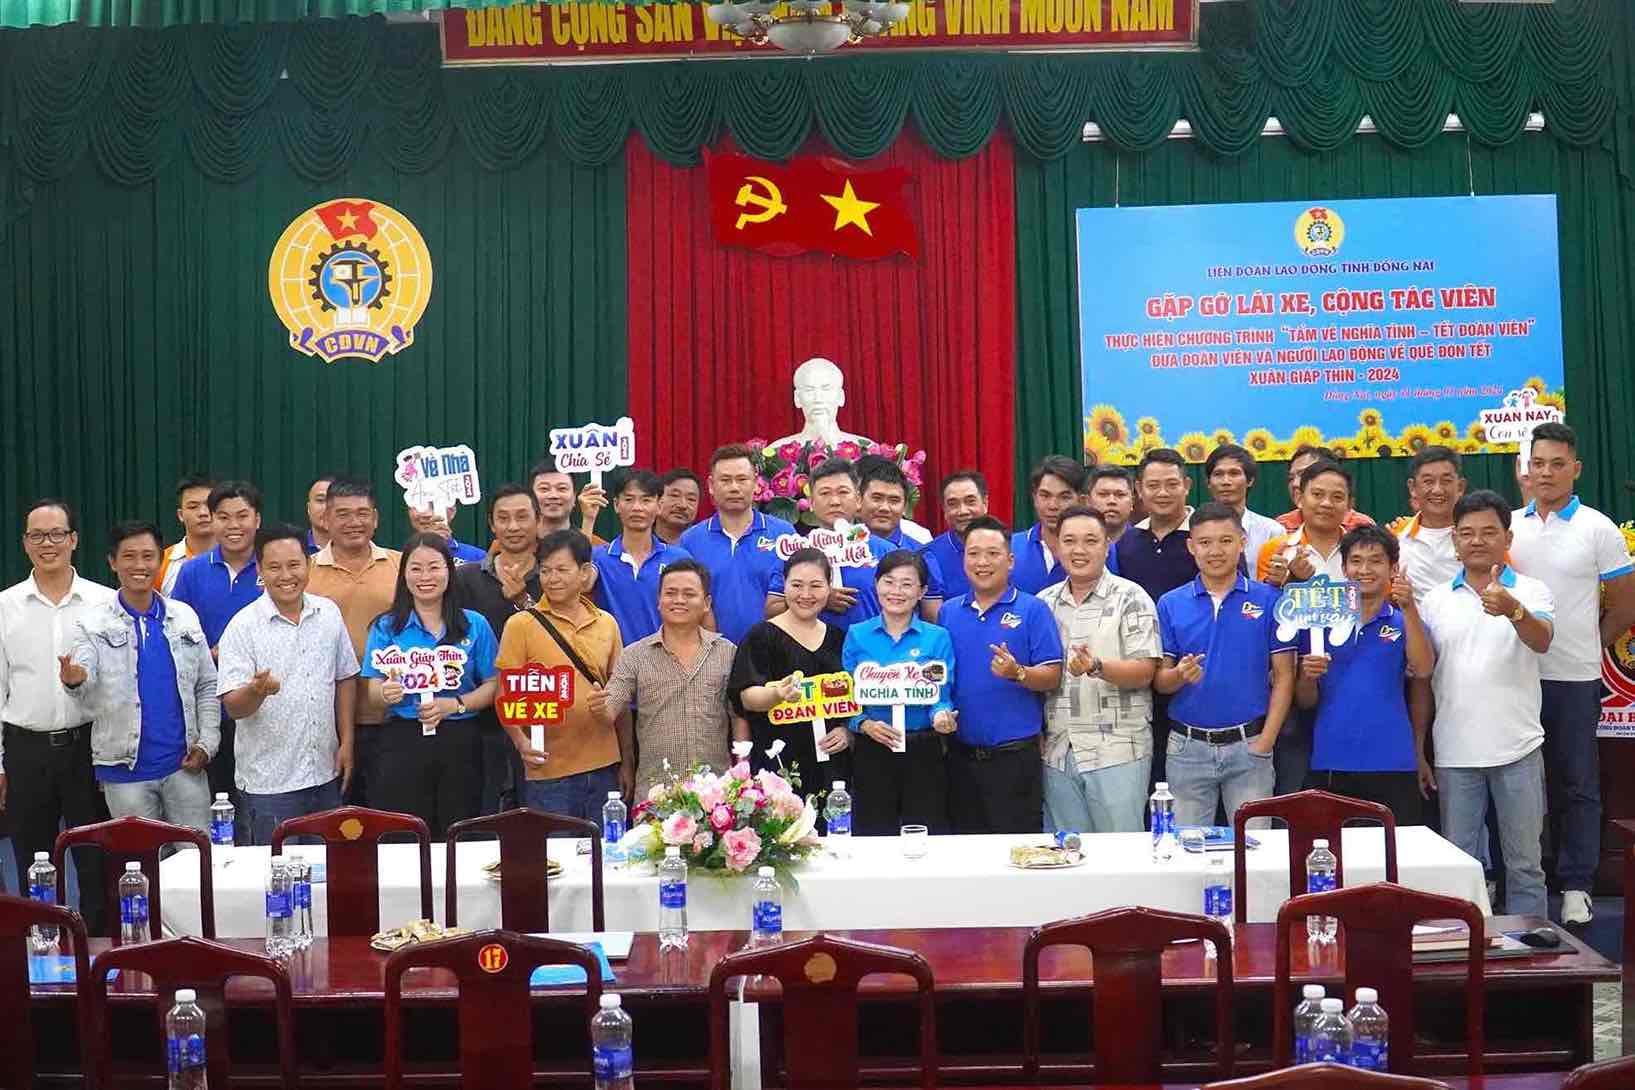 LĐLĐ tỉnh Đồng Nai đã tổ chức gặp gỡ lái xe, cộng tác viên thực hiện chương trình Tấm vé nghĩa tình - Tết đoàn viên. Ảnh: Hà Anh Chiến